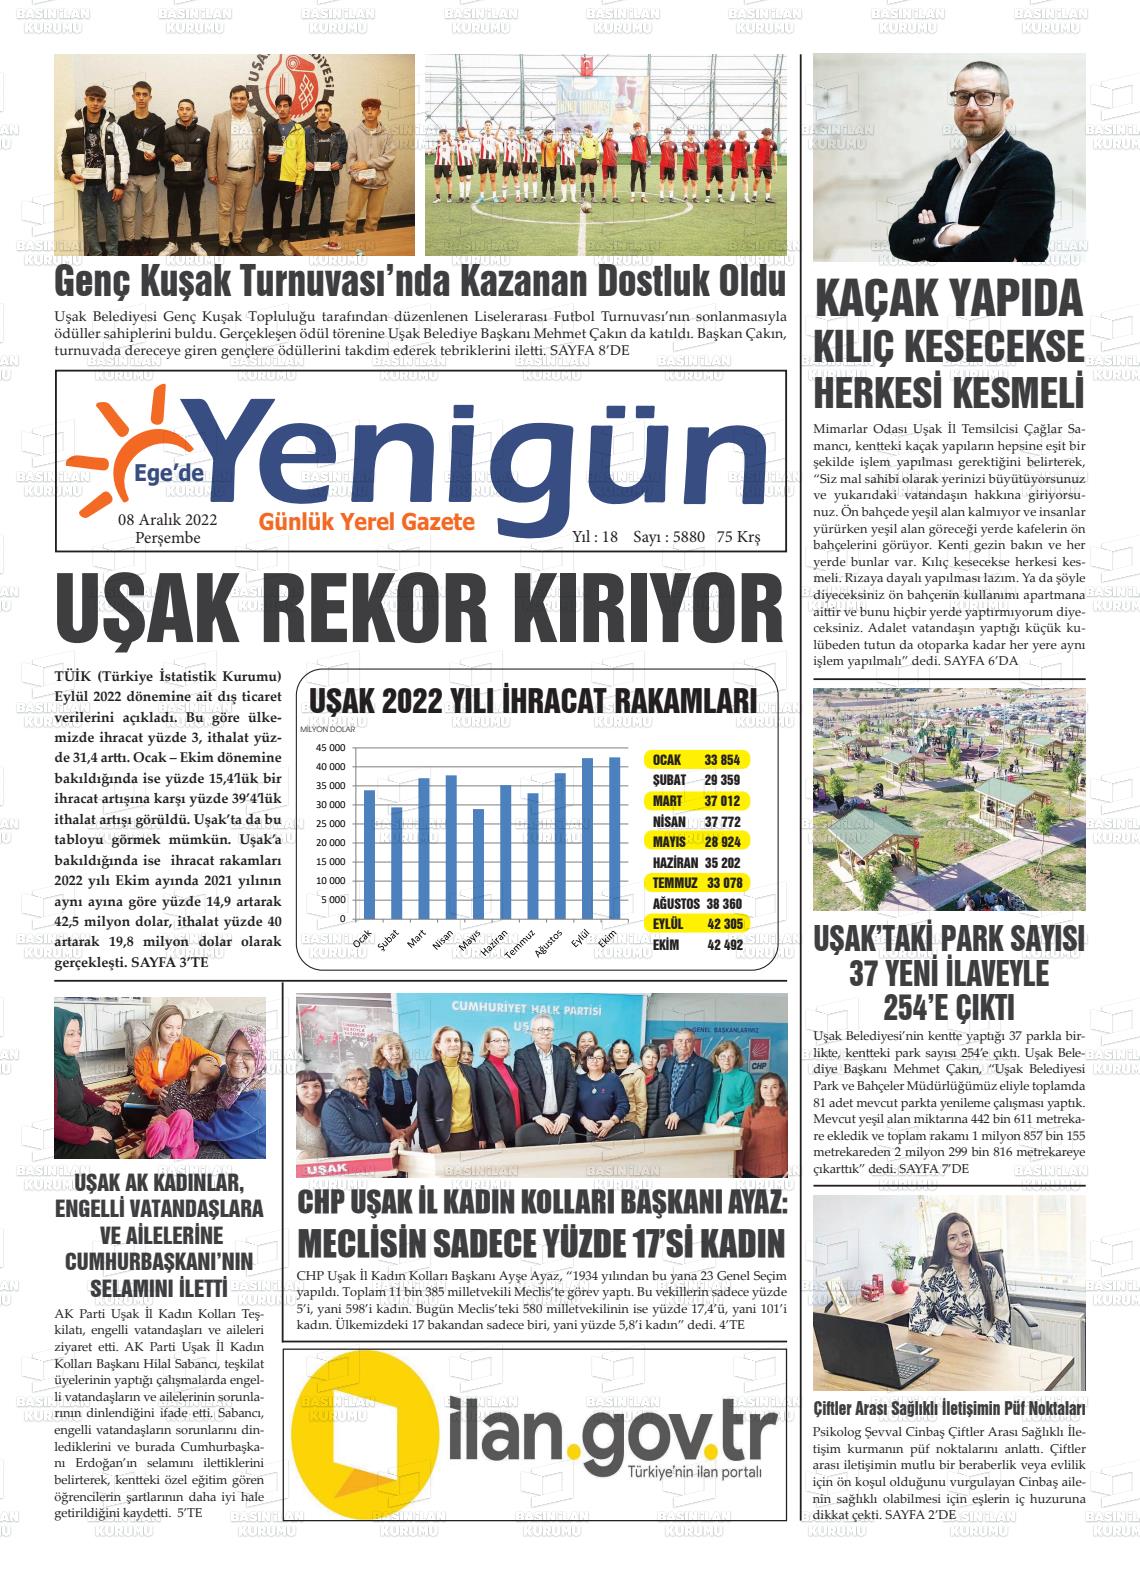 08 Aralık 2022 EGE'DE YENİGÜN GAZETESİ Gazete Manşeti